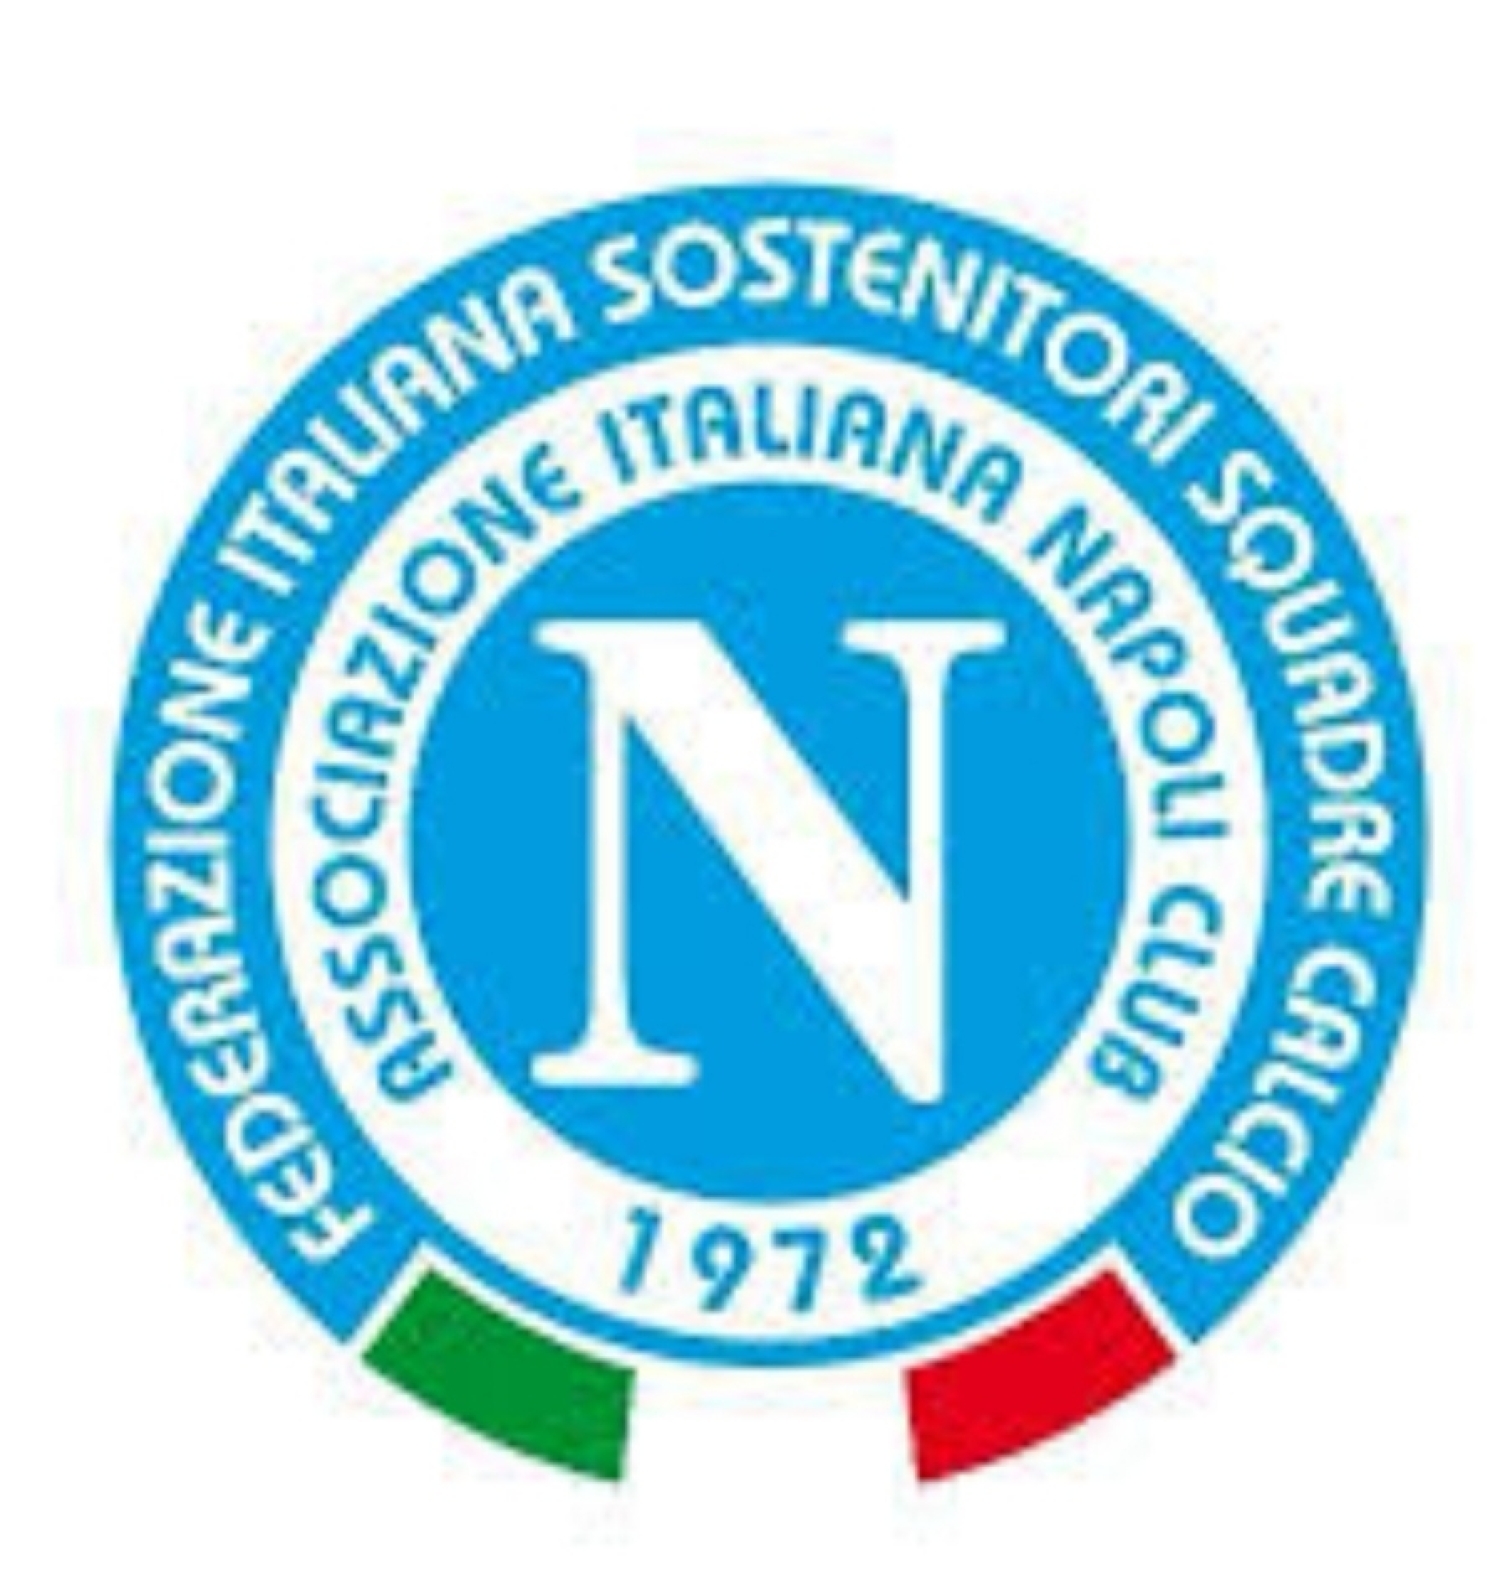 Messaggio dall'Associazione Italiana Napoli Club